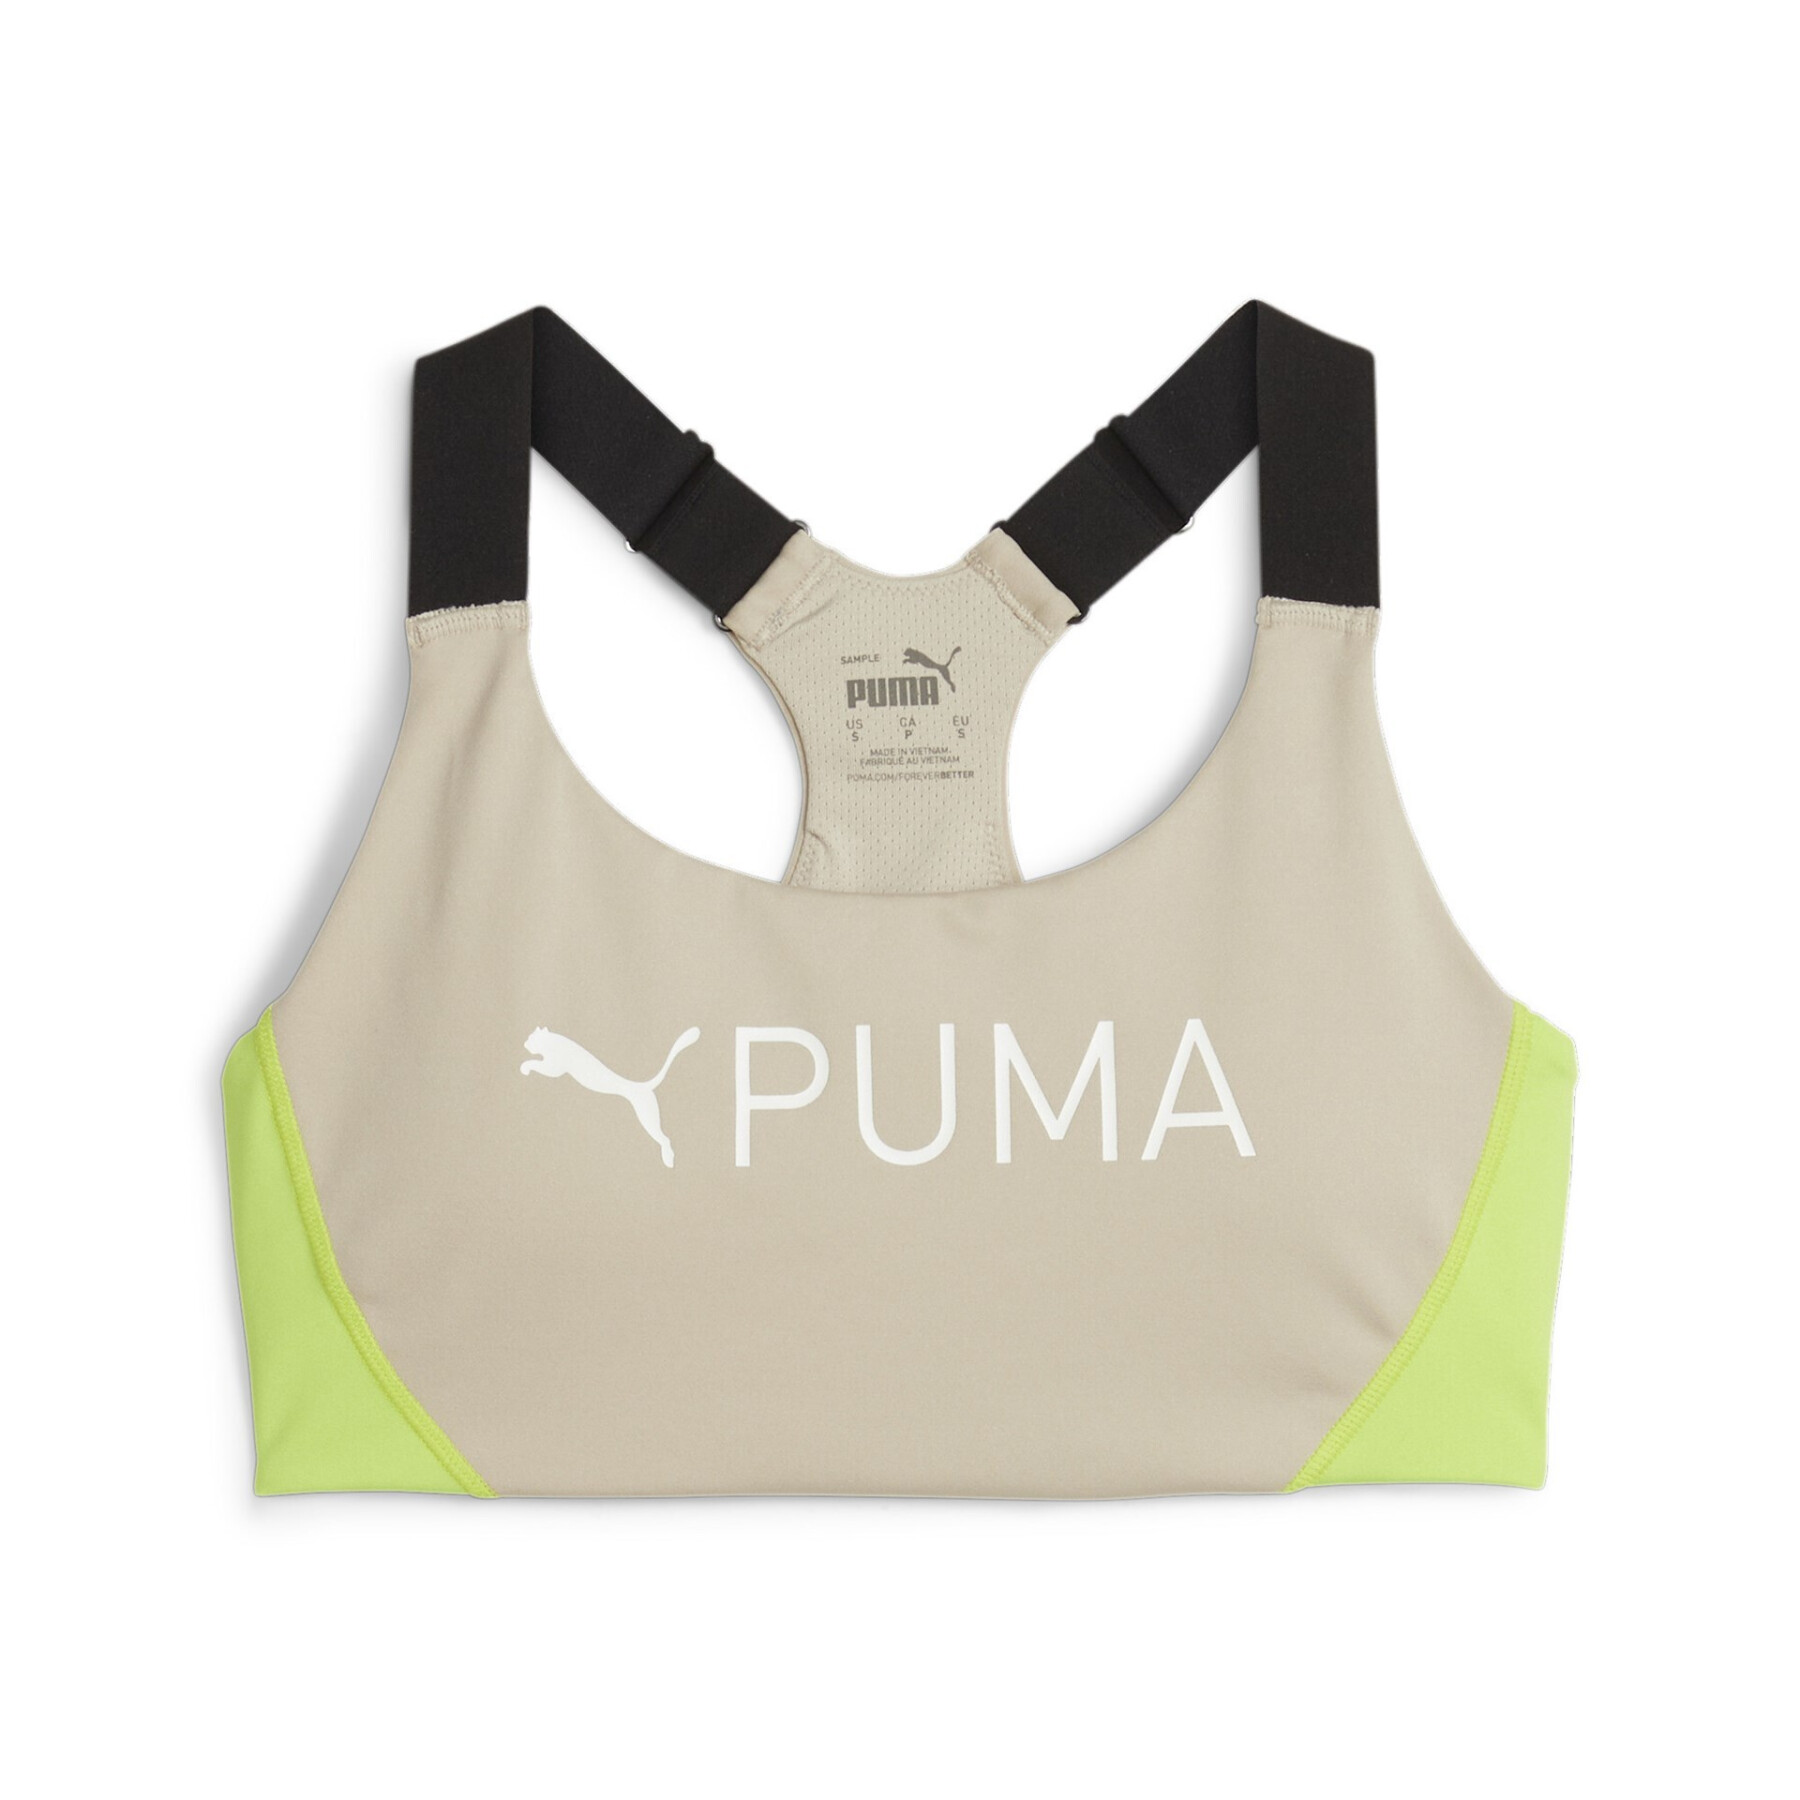 Women's bra Puma 4Keeps Eversculpt - Sports bras - Women's wear